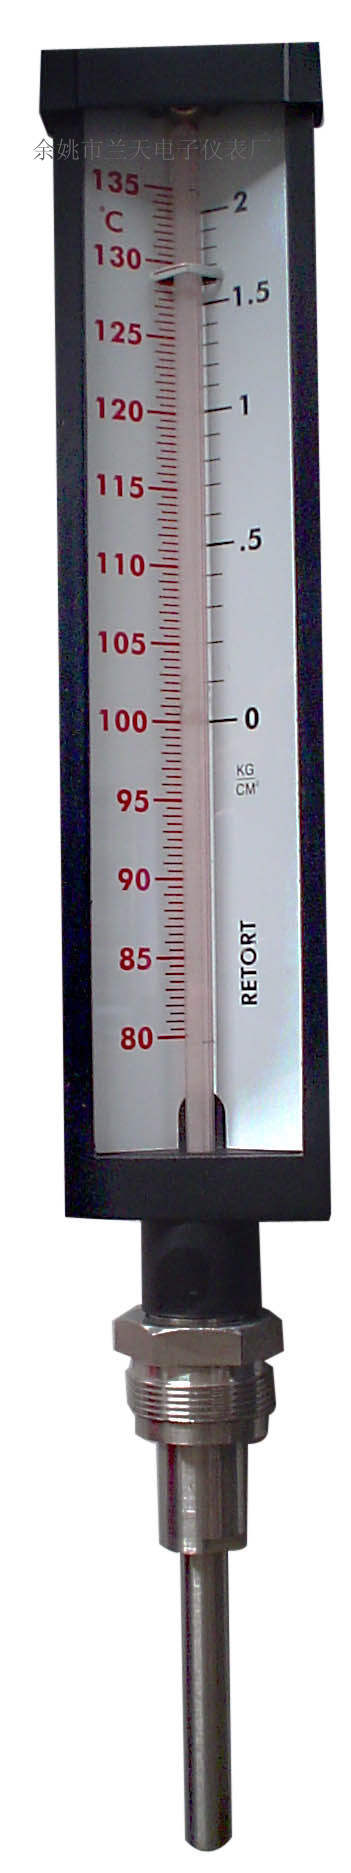 铝壳工业温度计